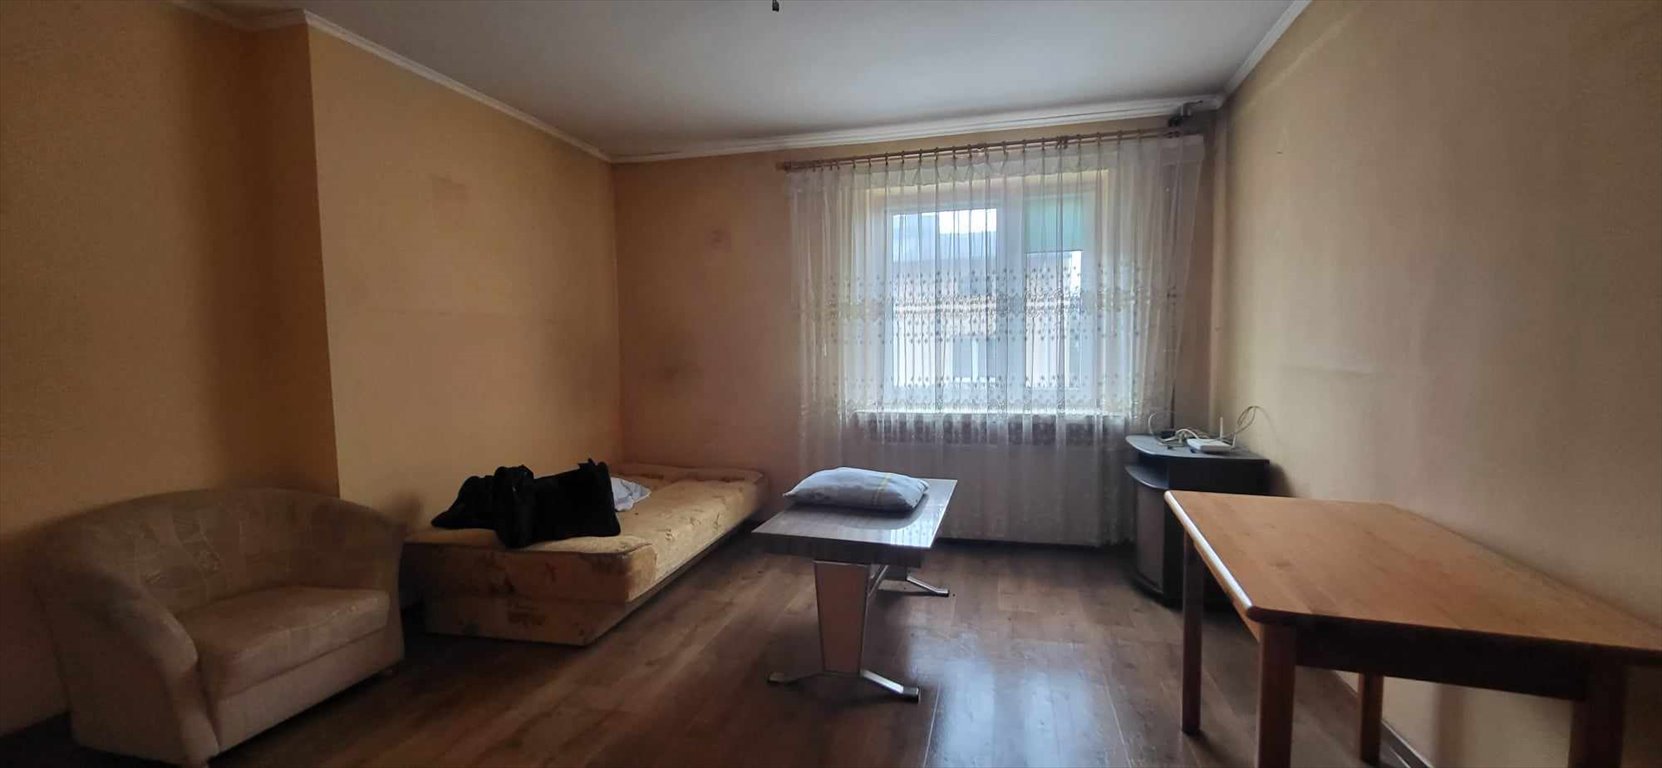 Mieszkanie trzypokojowe na sprzedaż Kłomnice, Nieznanice  100m2 Foto 7